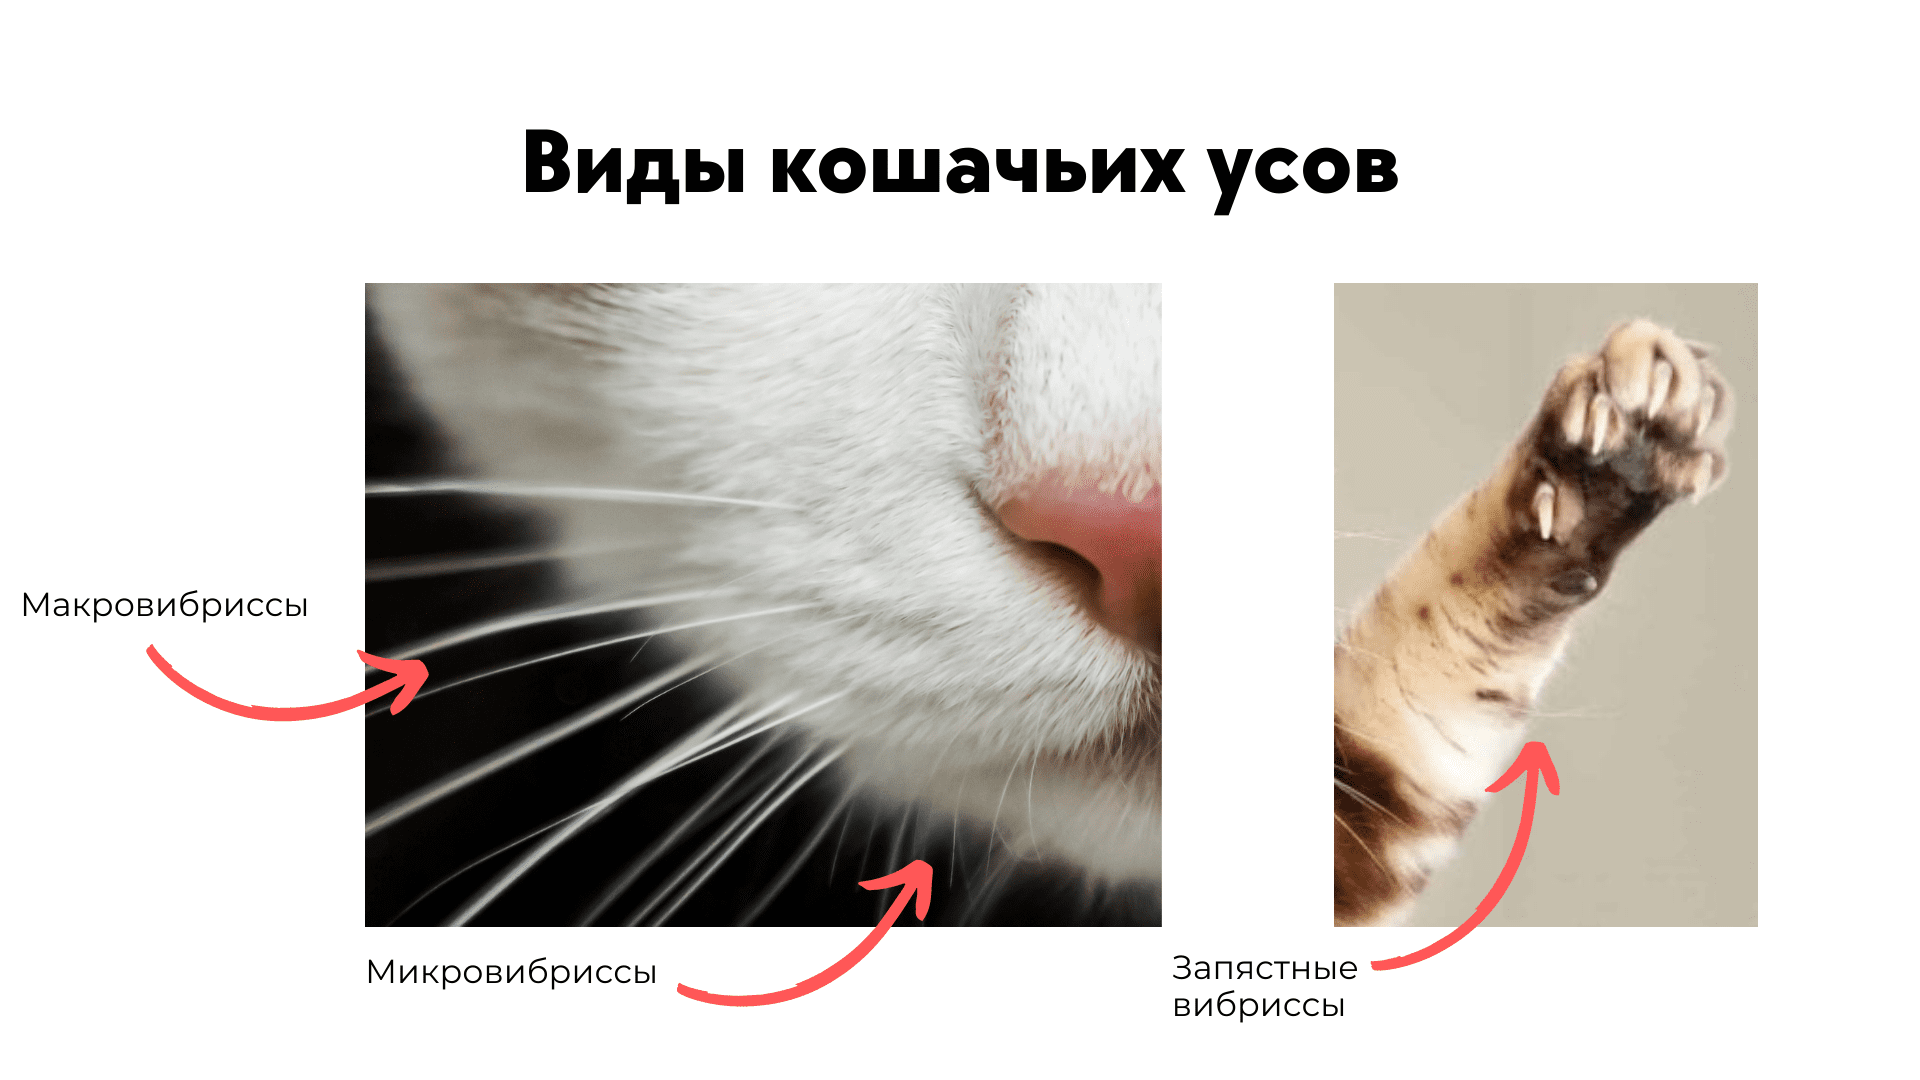 Язва на губе у кошки